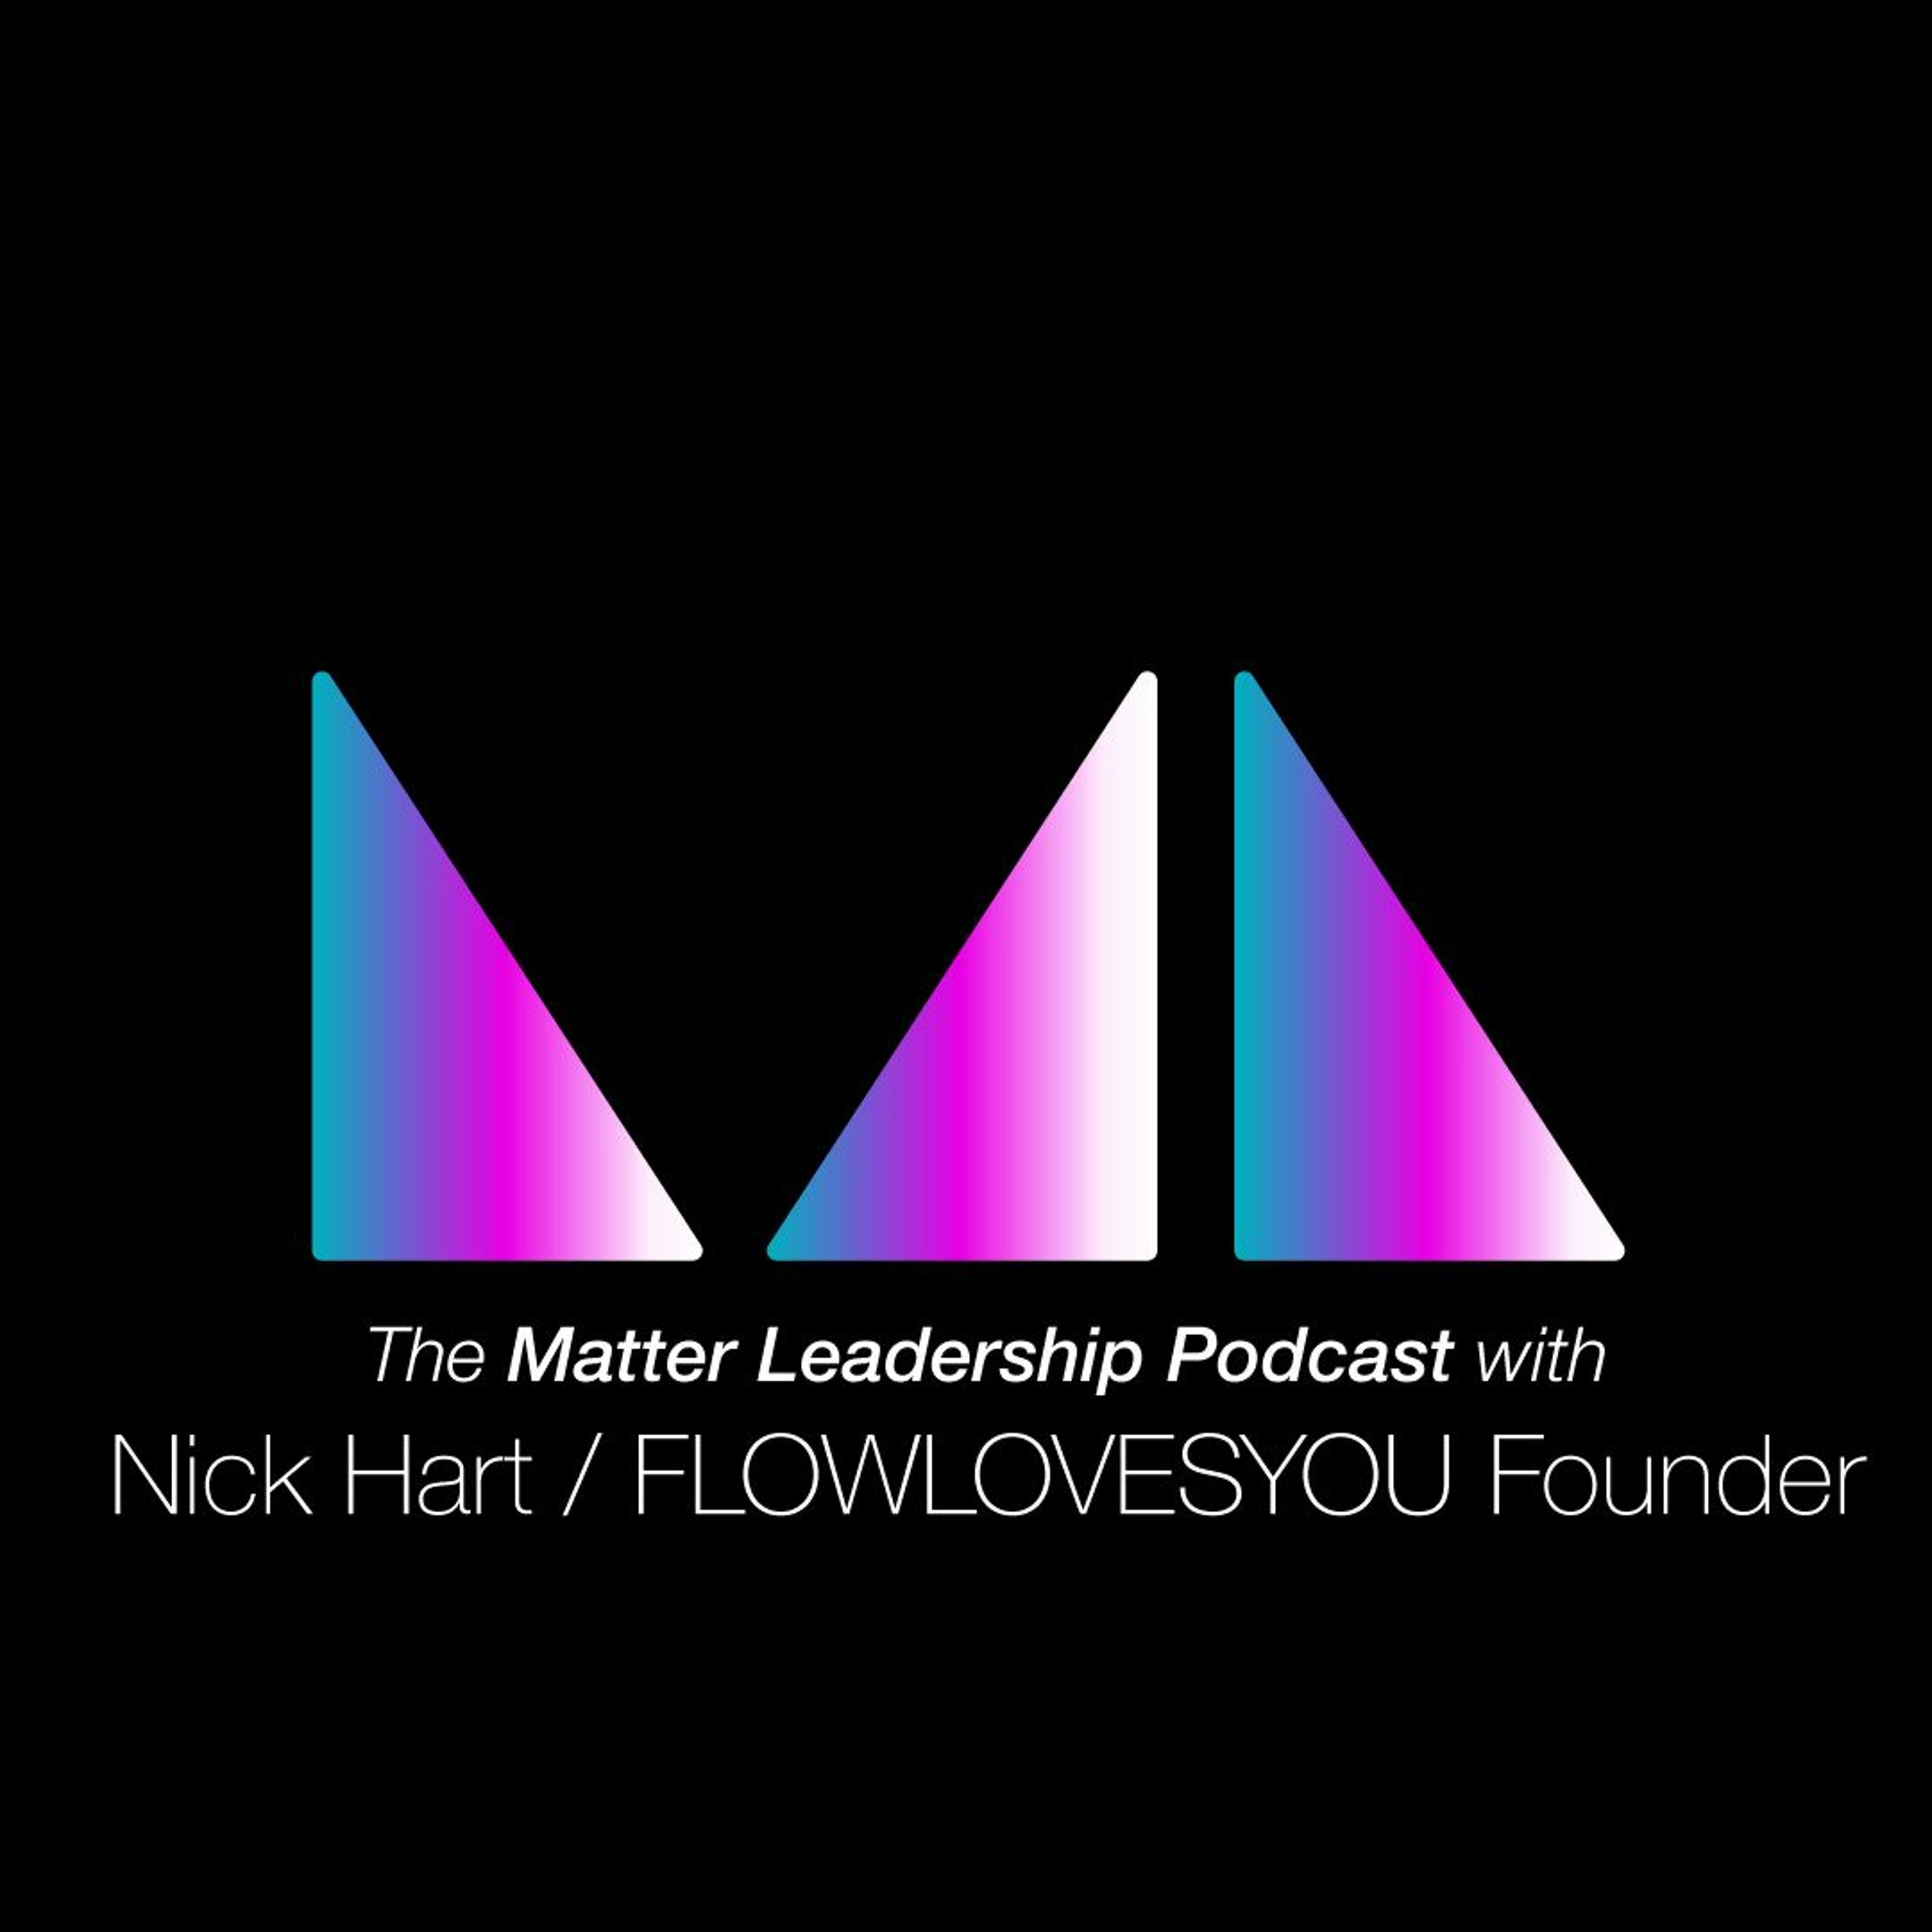 The Matter Leadership Podcast: Nick Hart / FLOWLOVESYOU Founder